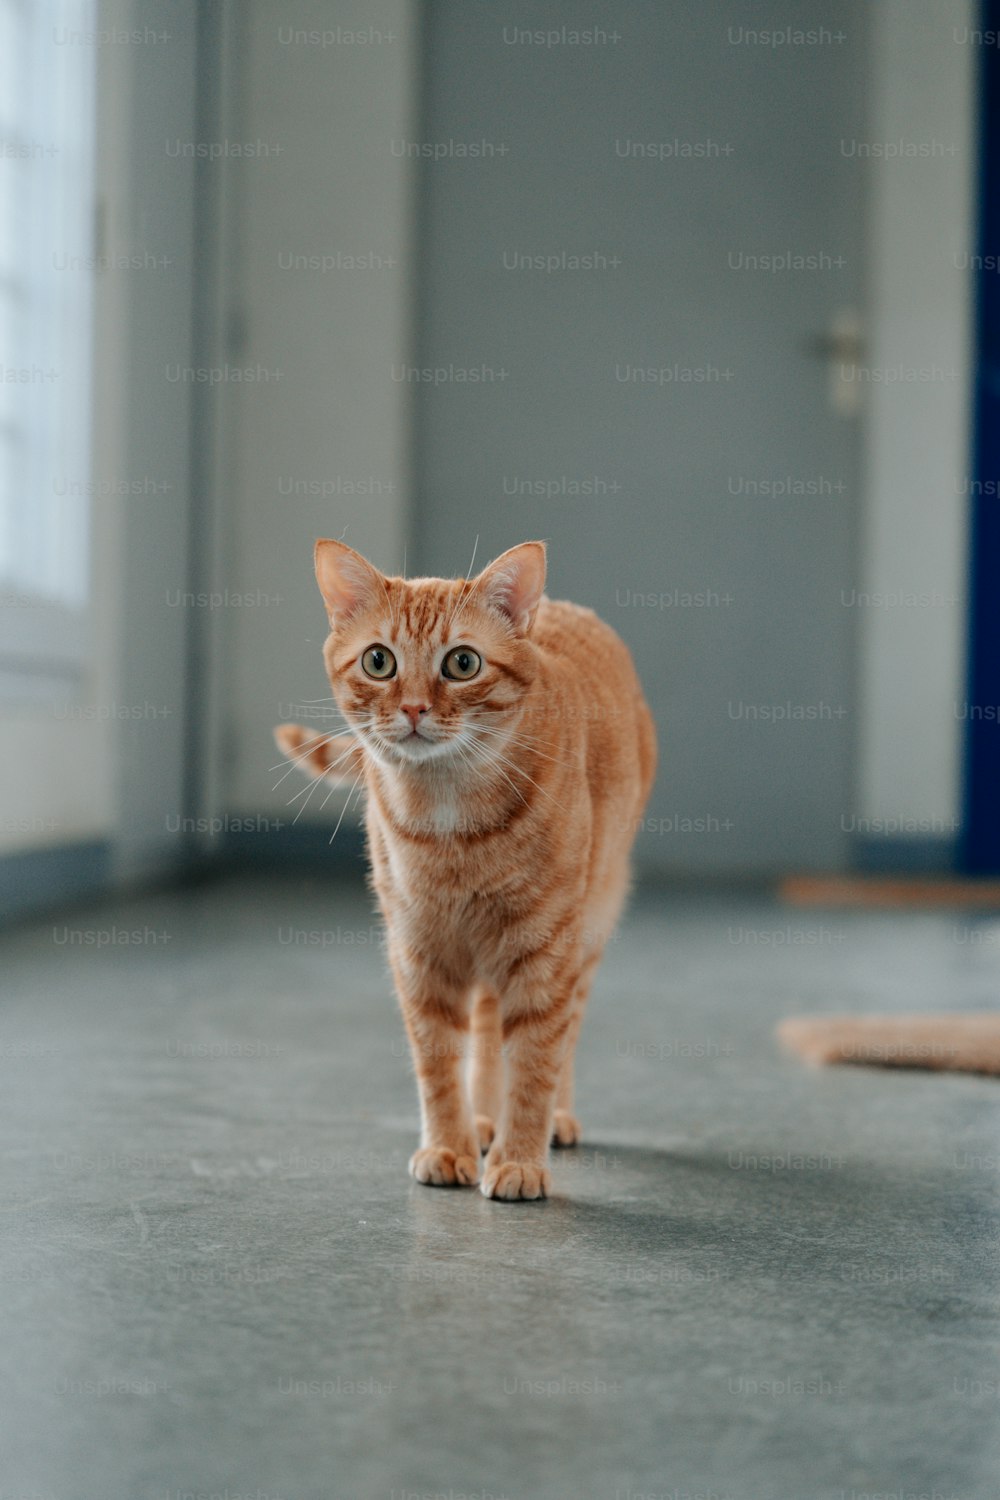 바닥을 가로질러 걷는 작은 주황색 고양이